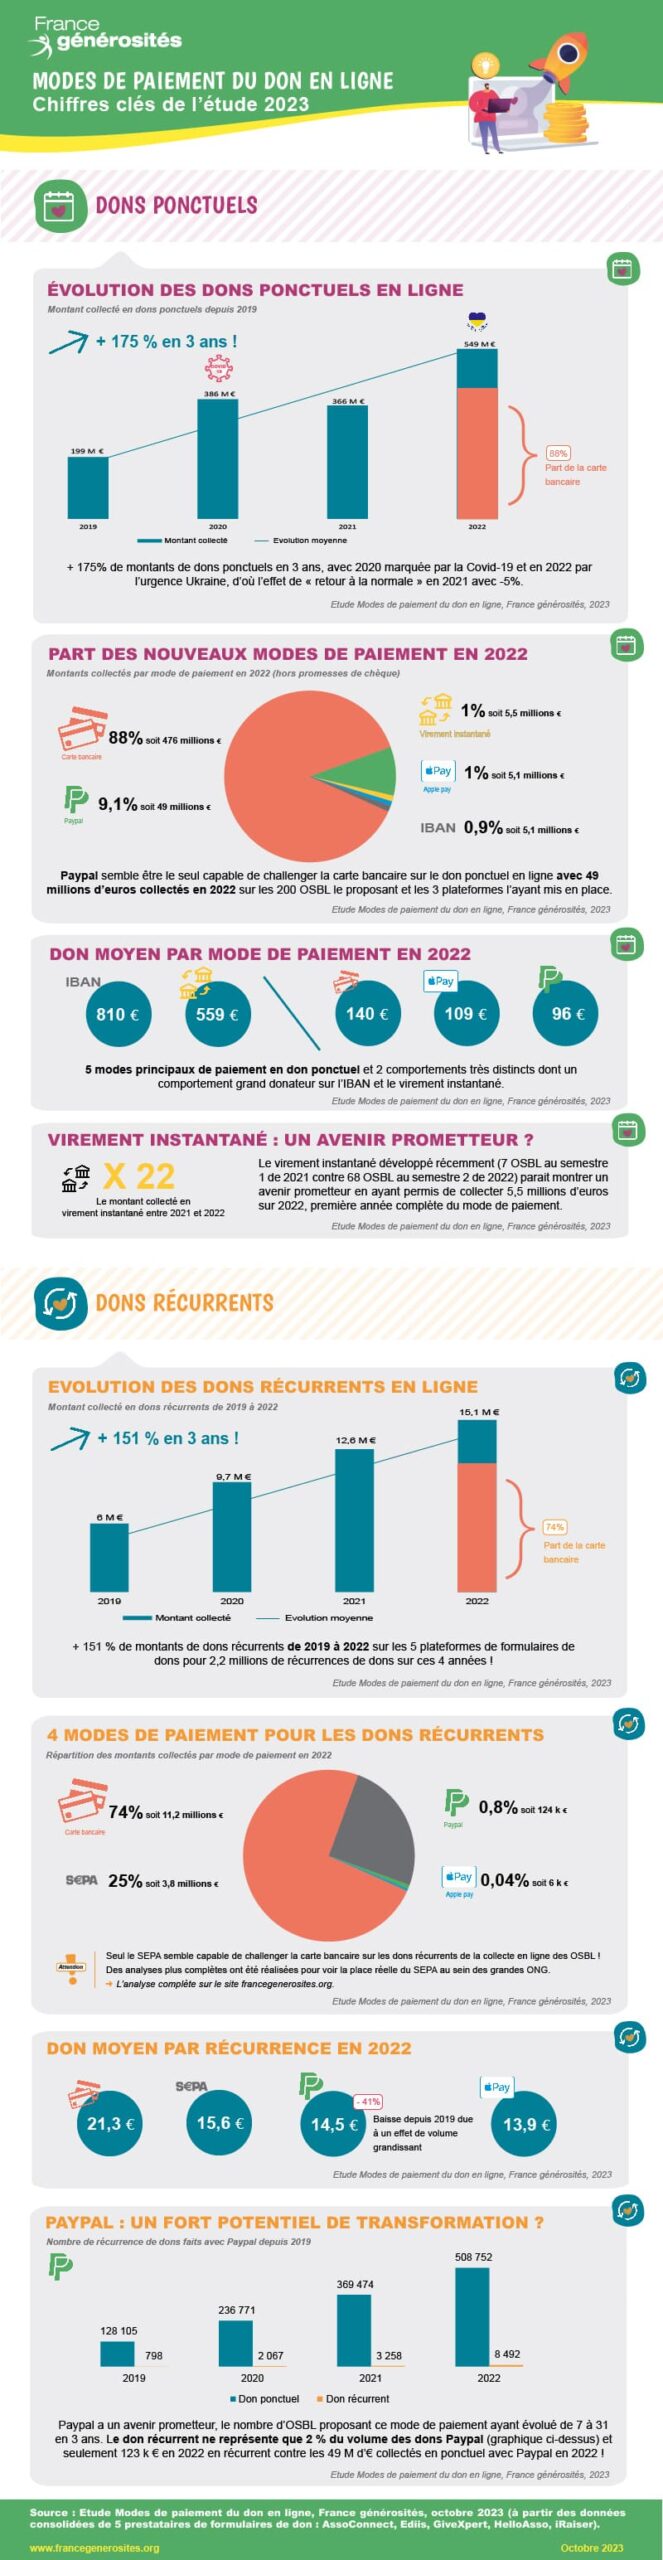 Infographie Etude modes de paiement du don en ligne - France générosités - 2023 (BD)